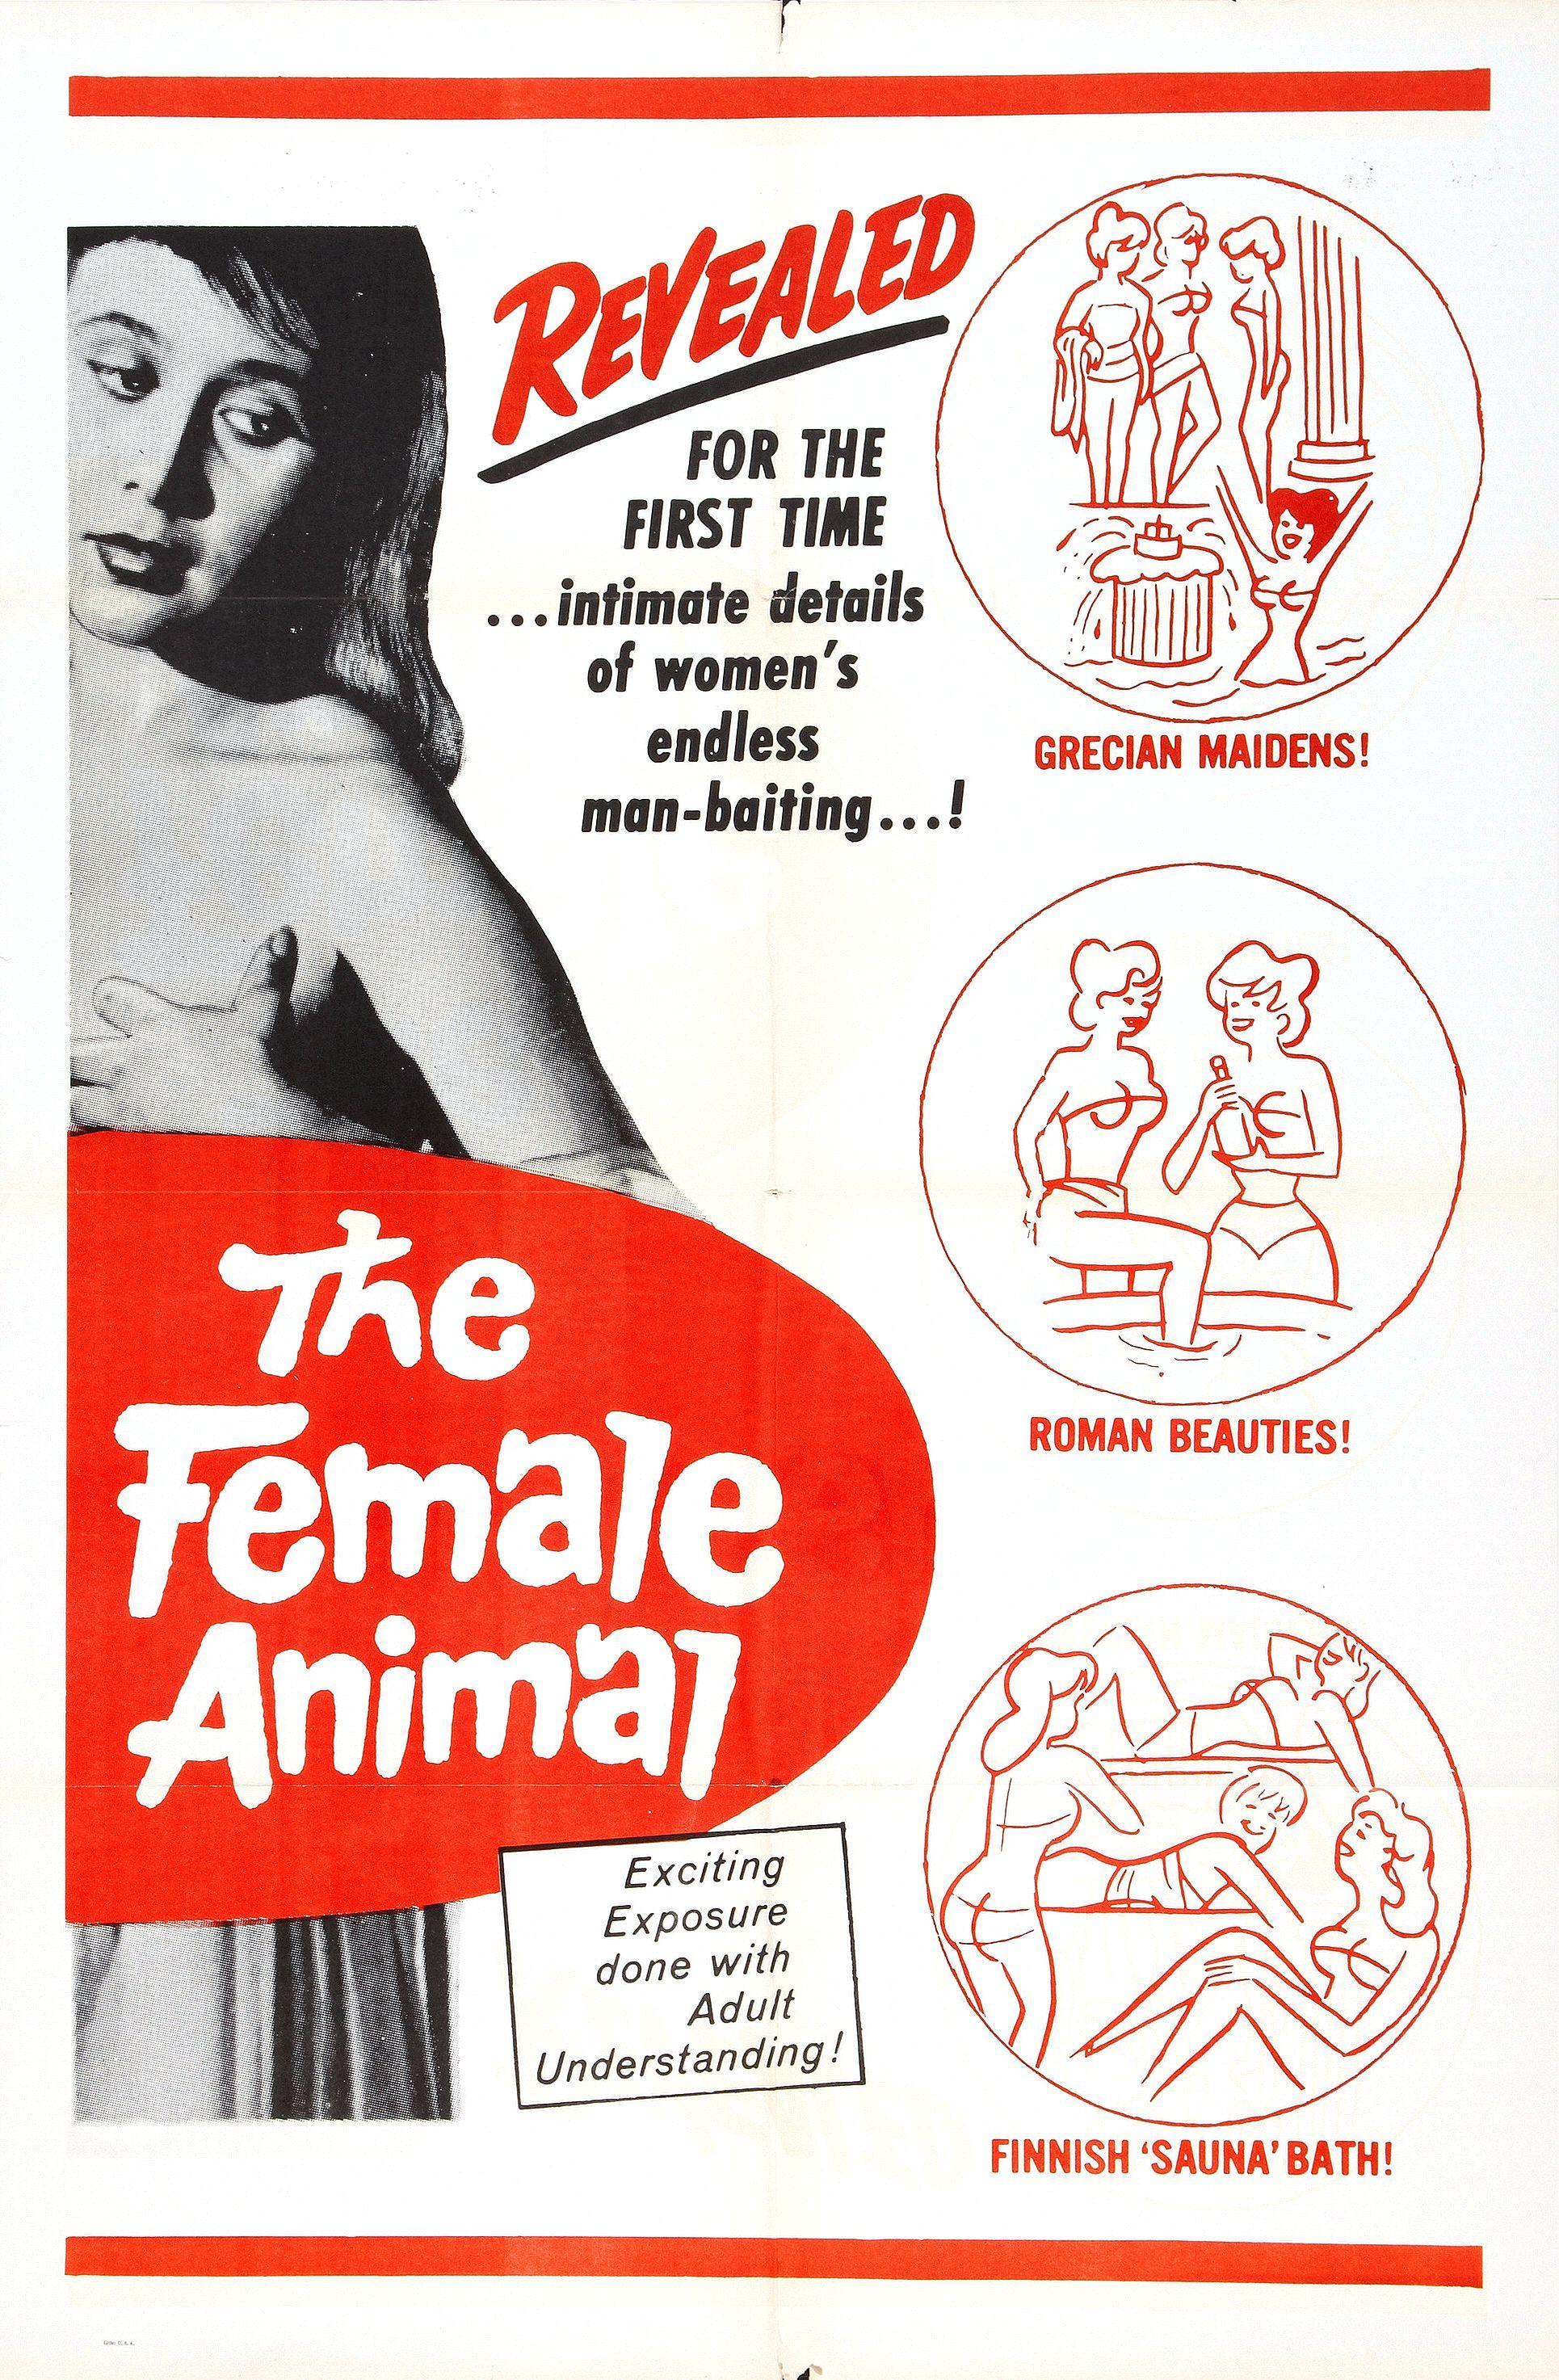 Постер фильма Female Animal